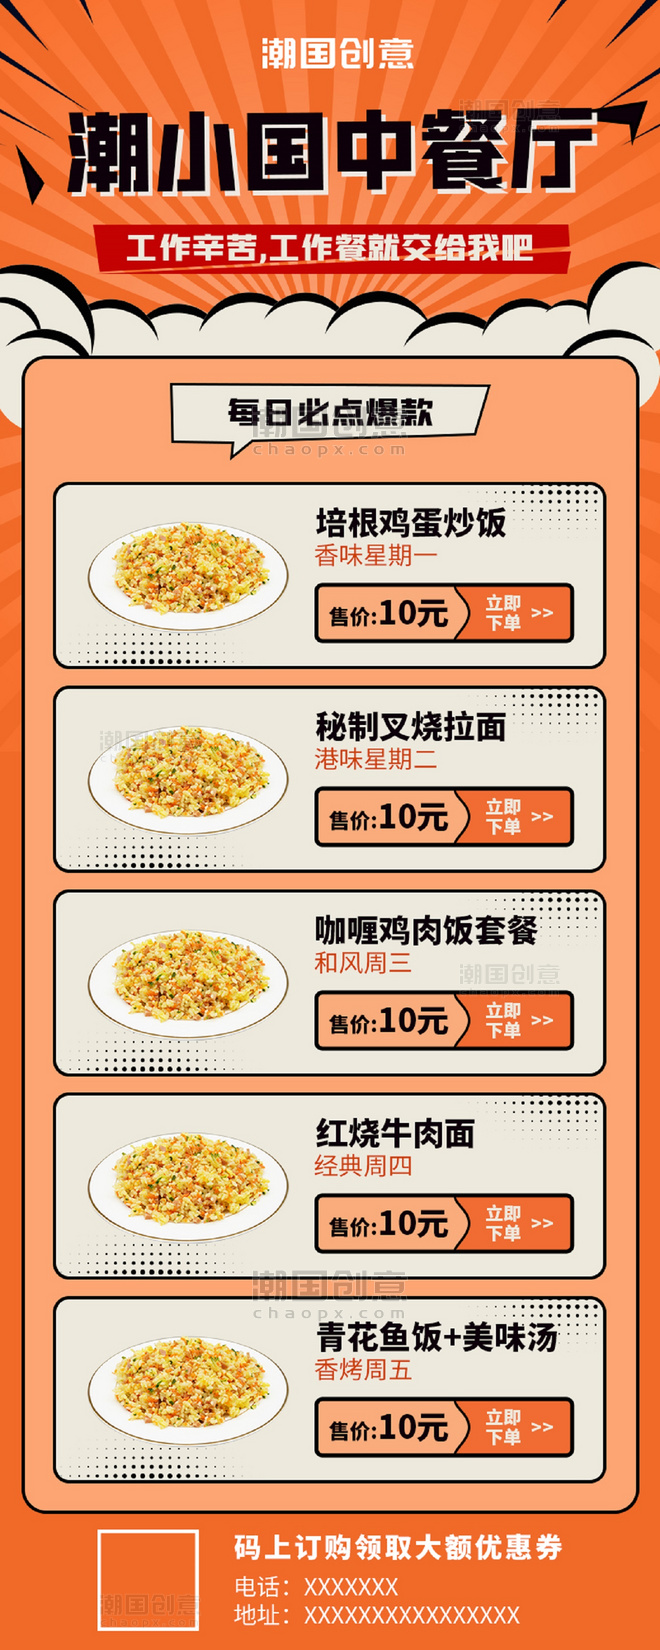 餐厅饭馆菜单炒饭橙色波普风长图海报